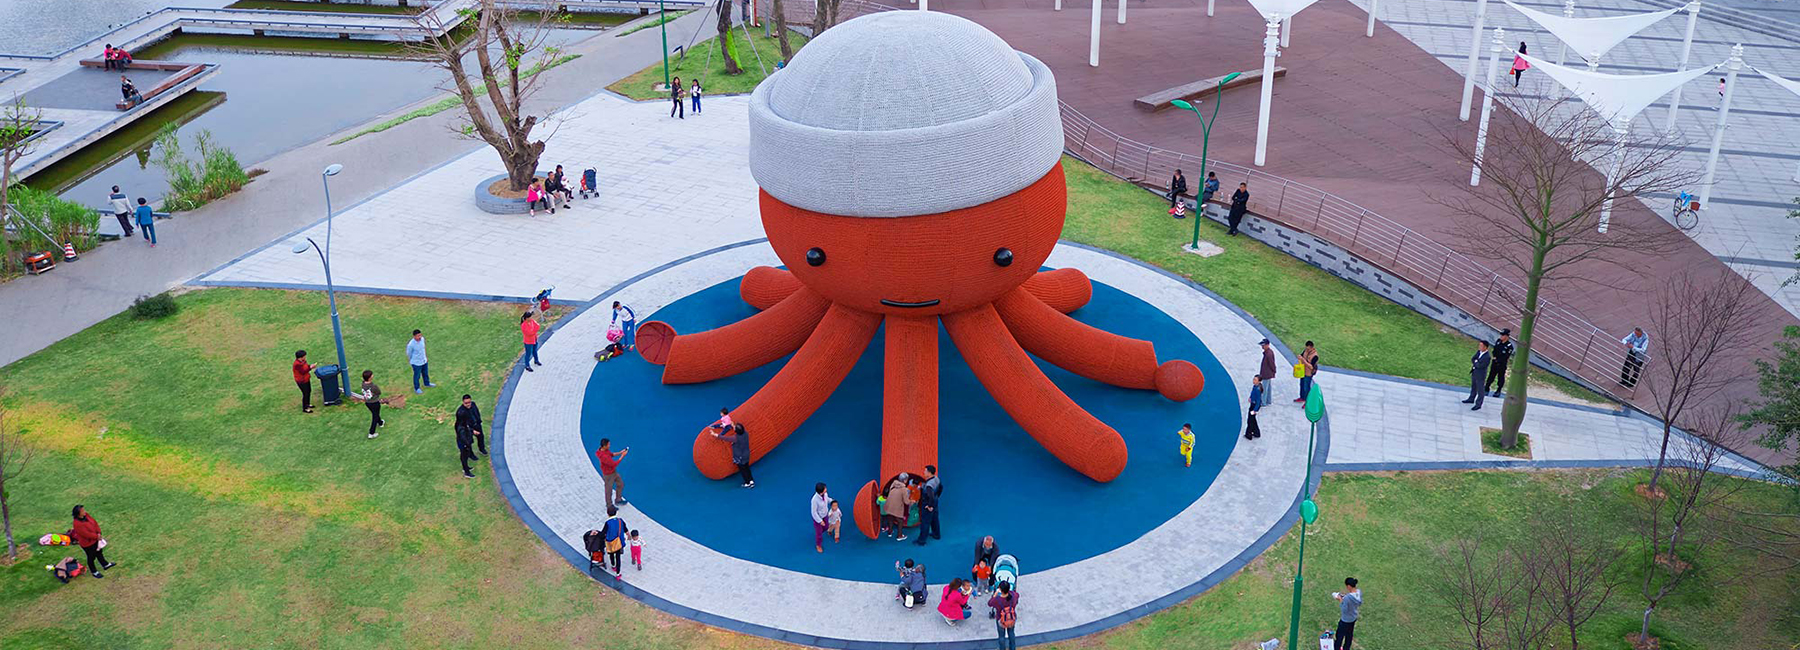 Gigantikus, nagyi-horgolta hatású polip egy kínai játszótéren